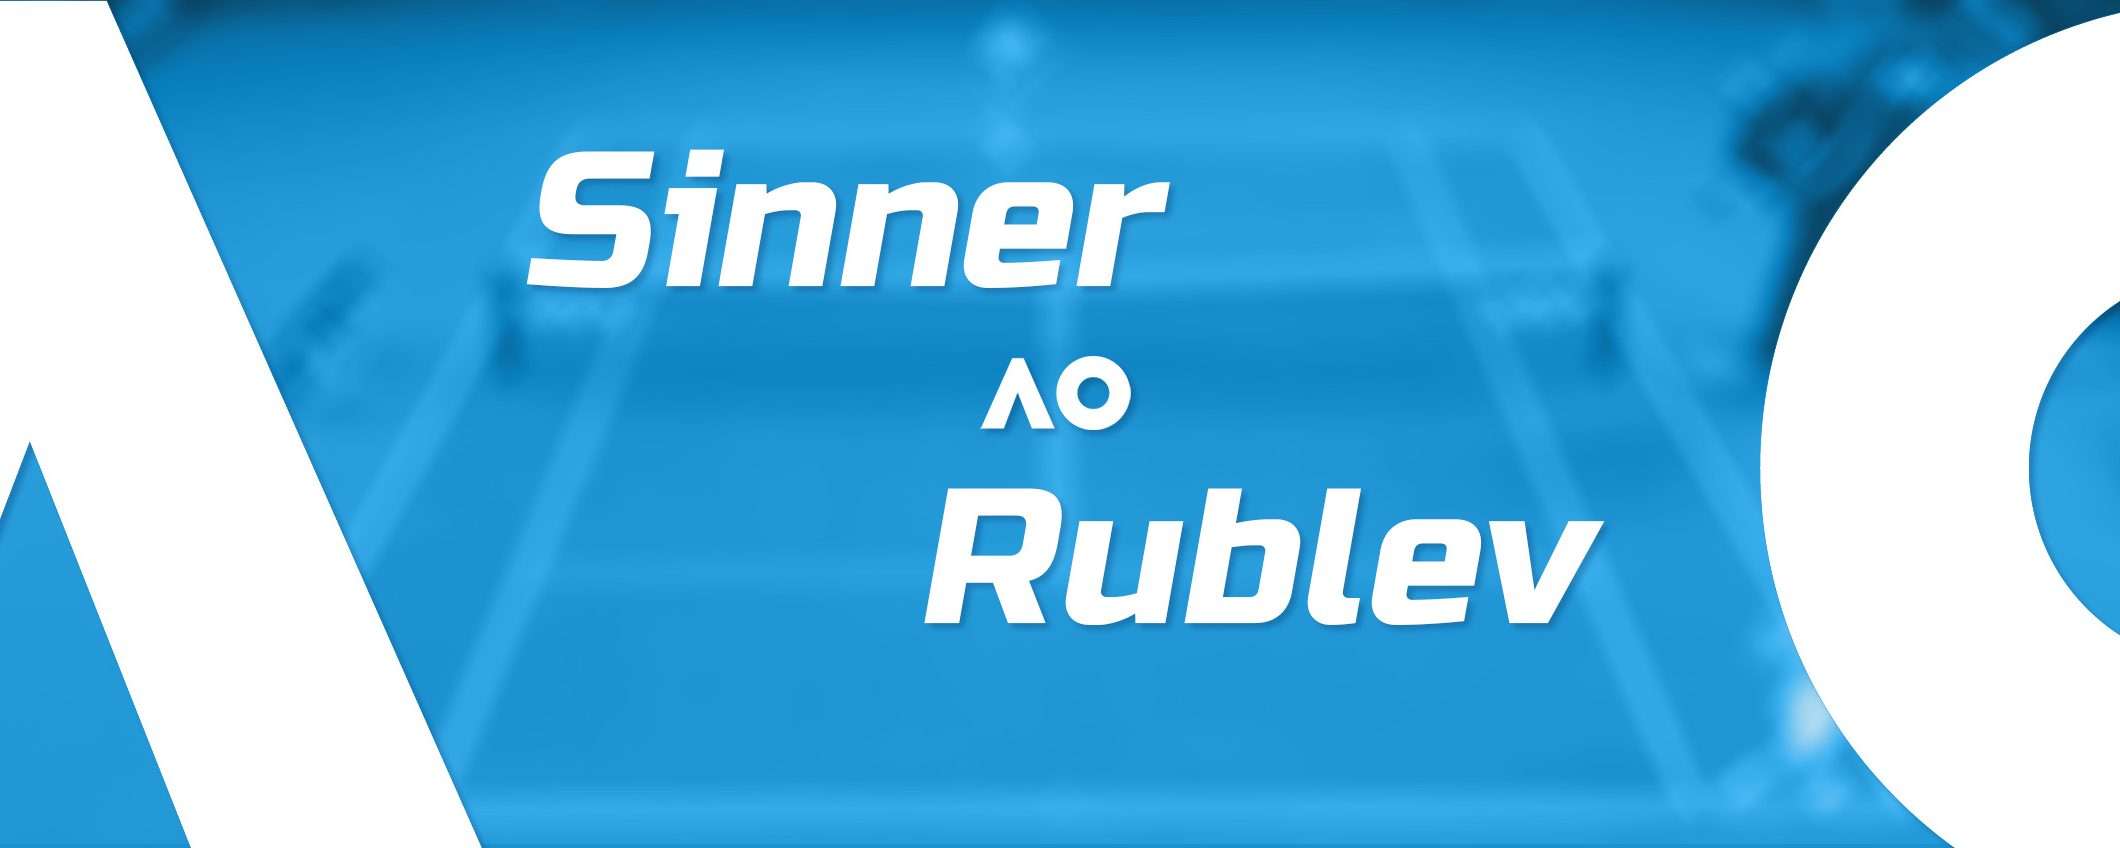 Come vedere Sinner-Rublev in streaming dall'estero